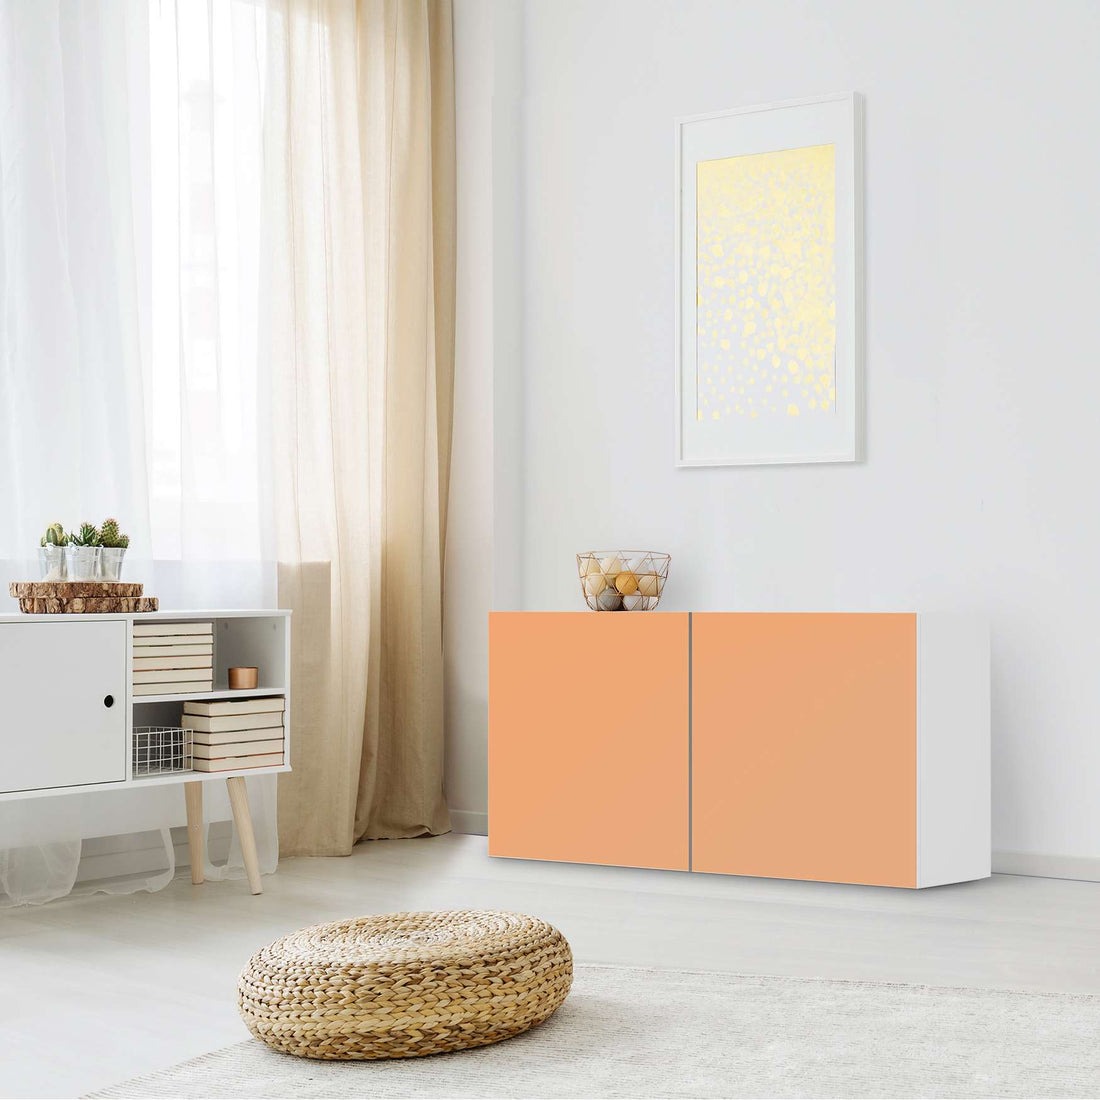 Folie für Möbel Orange Light - IKEA Besta Regal Quer 2 Türen - Wohnzimmer